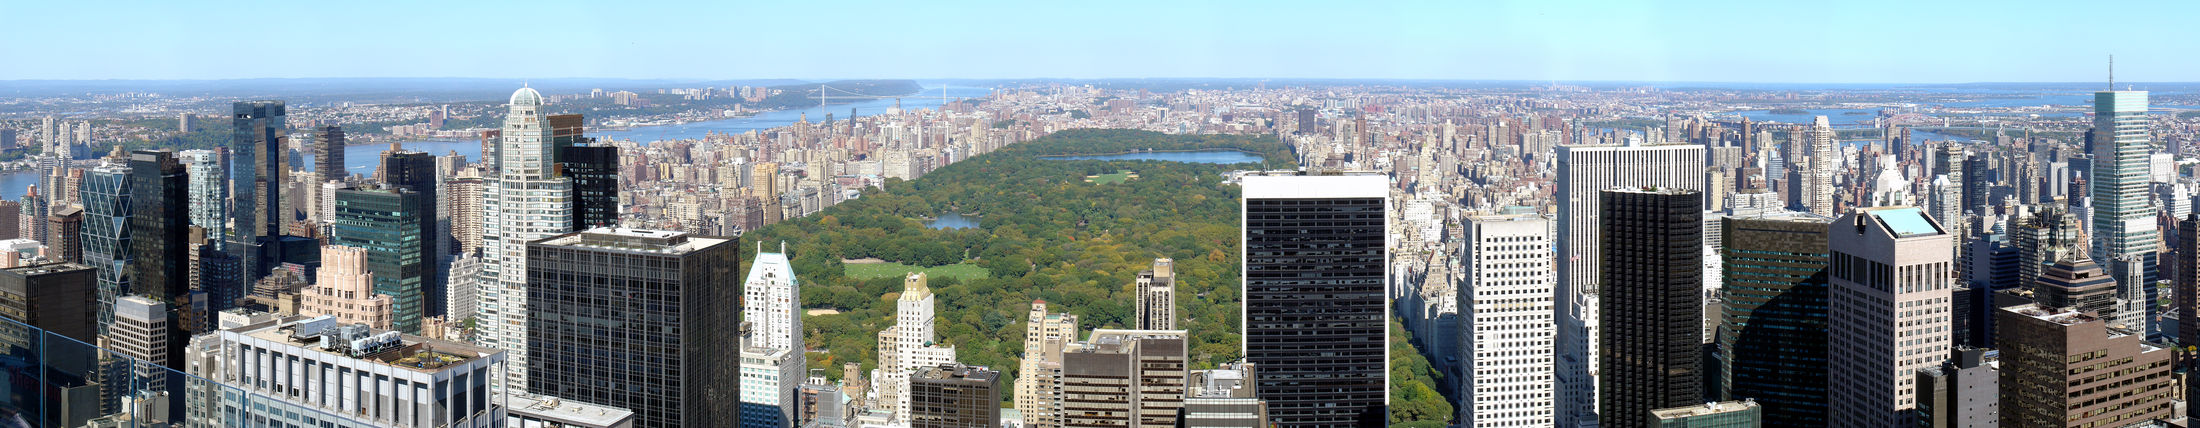 Central Park je nejnavštěvovanějším parkem ve Spojených státech (2008)